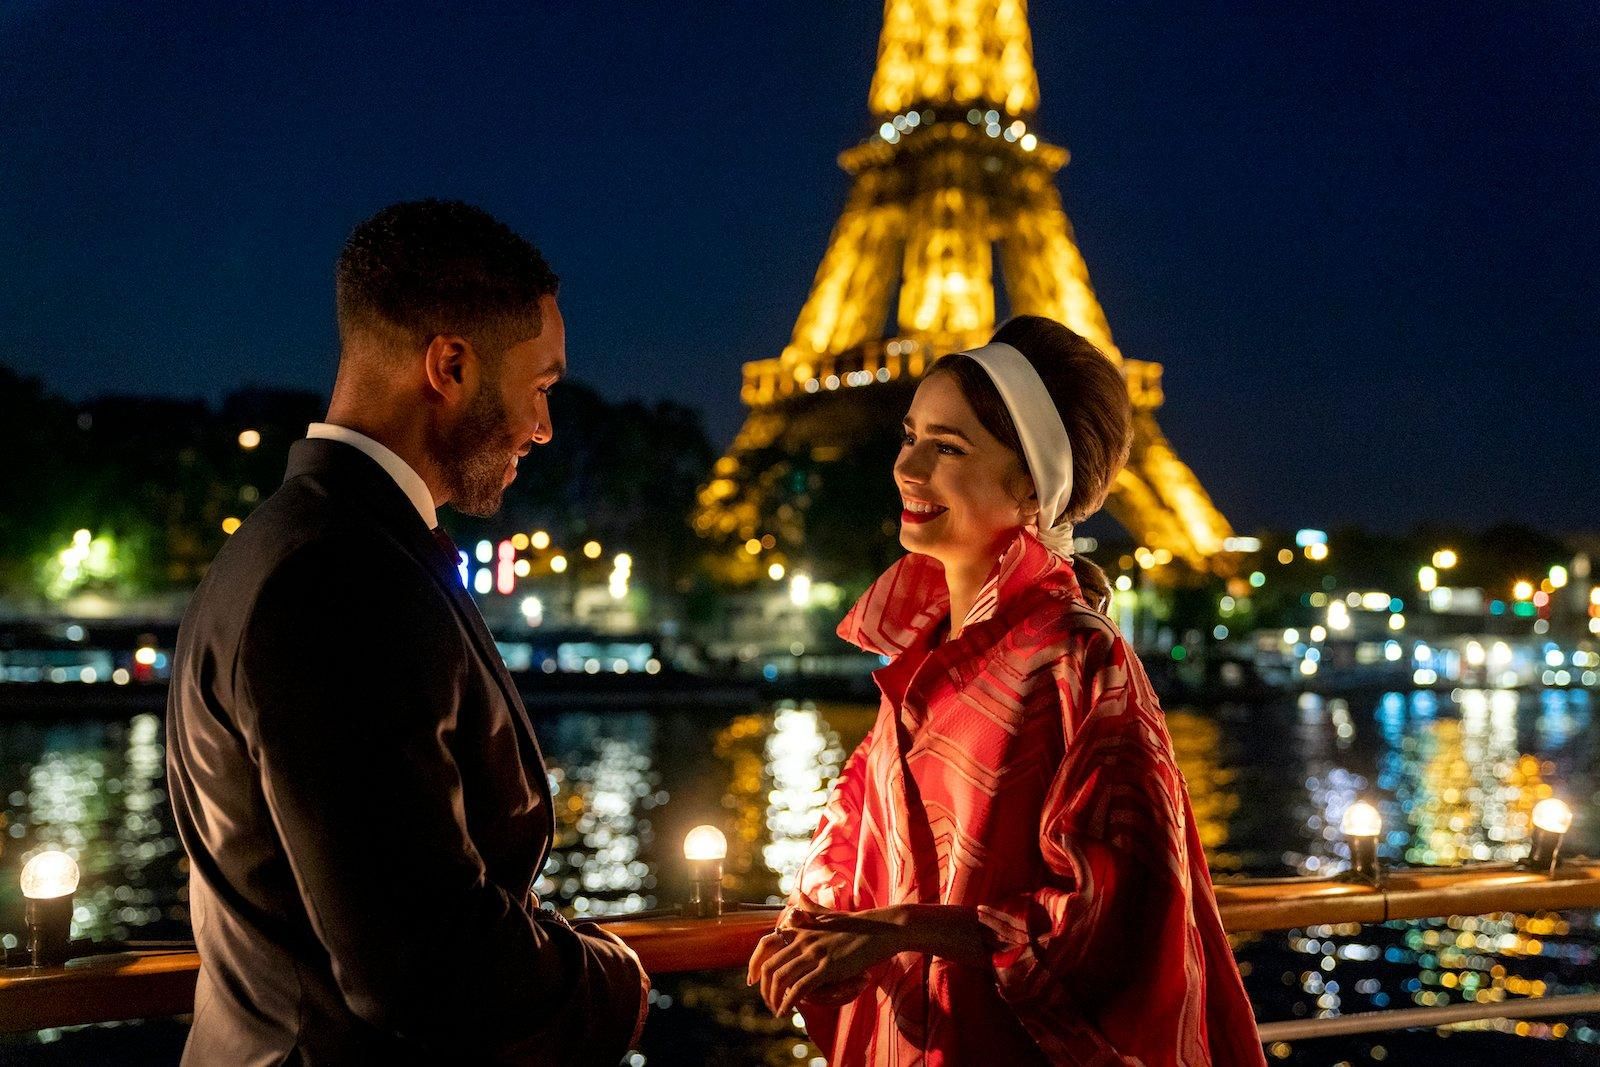 "Справжнє задоволення": Netflix представив перші кадри другого сезону "Емілі в Парижі" - Кіно